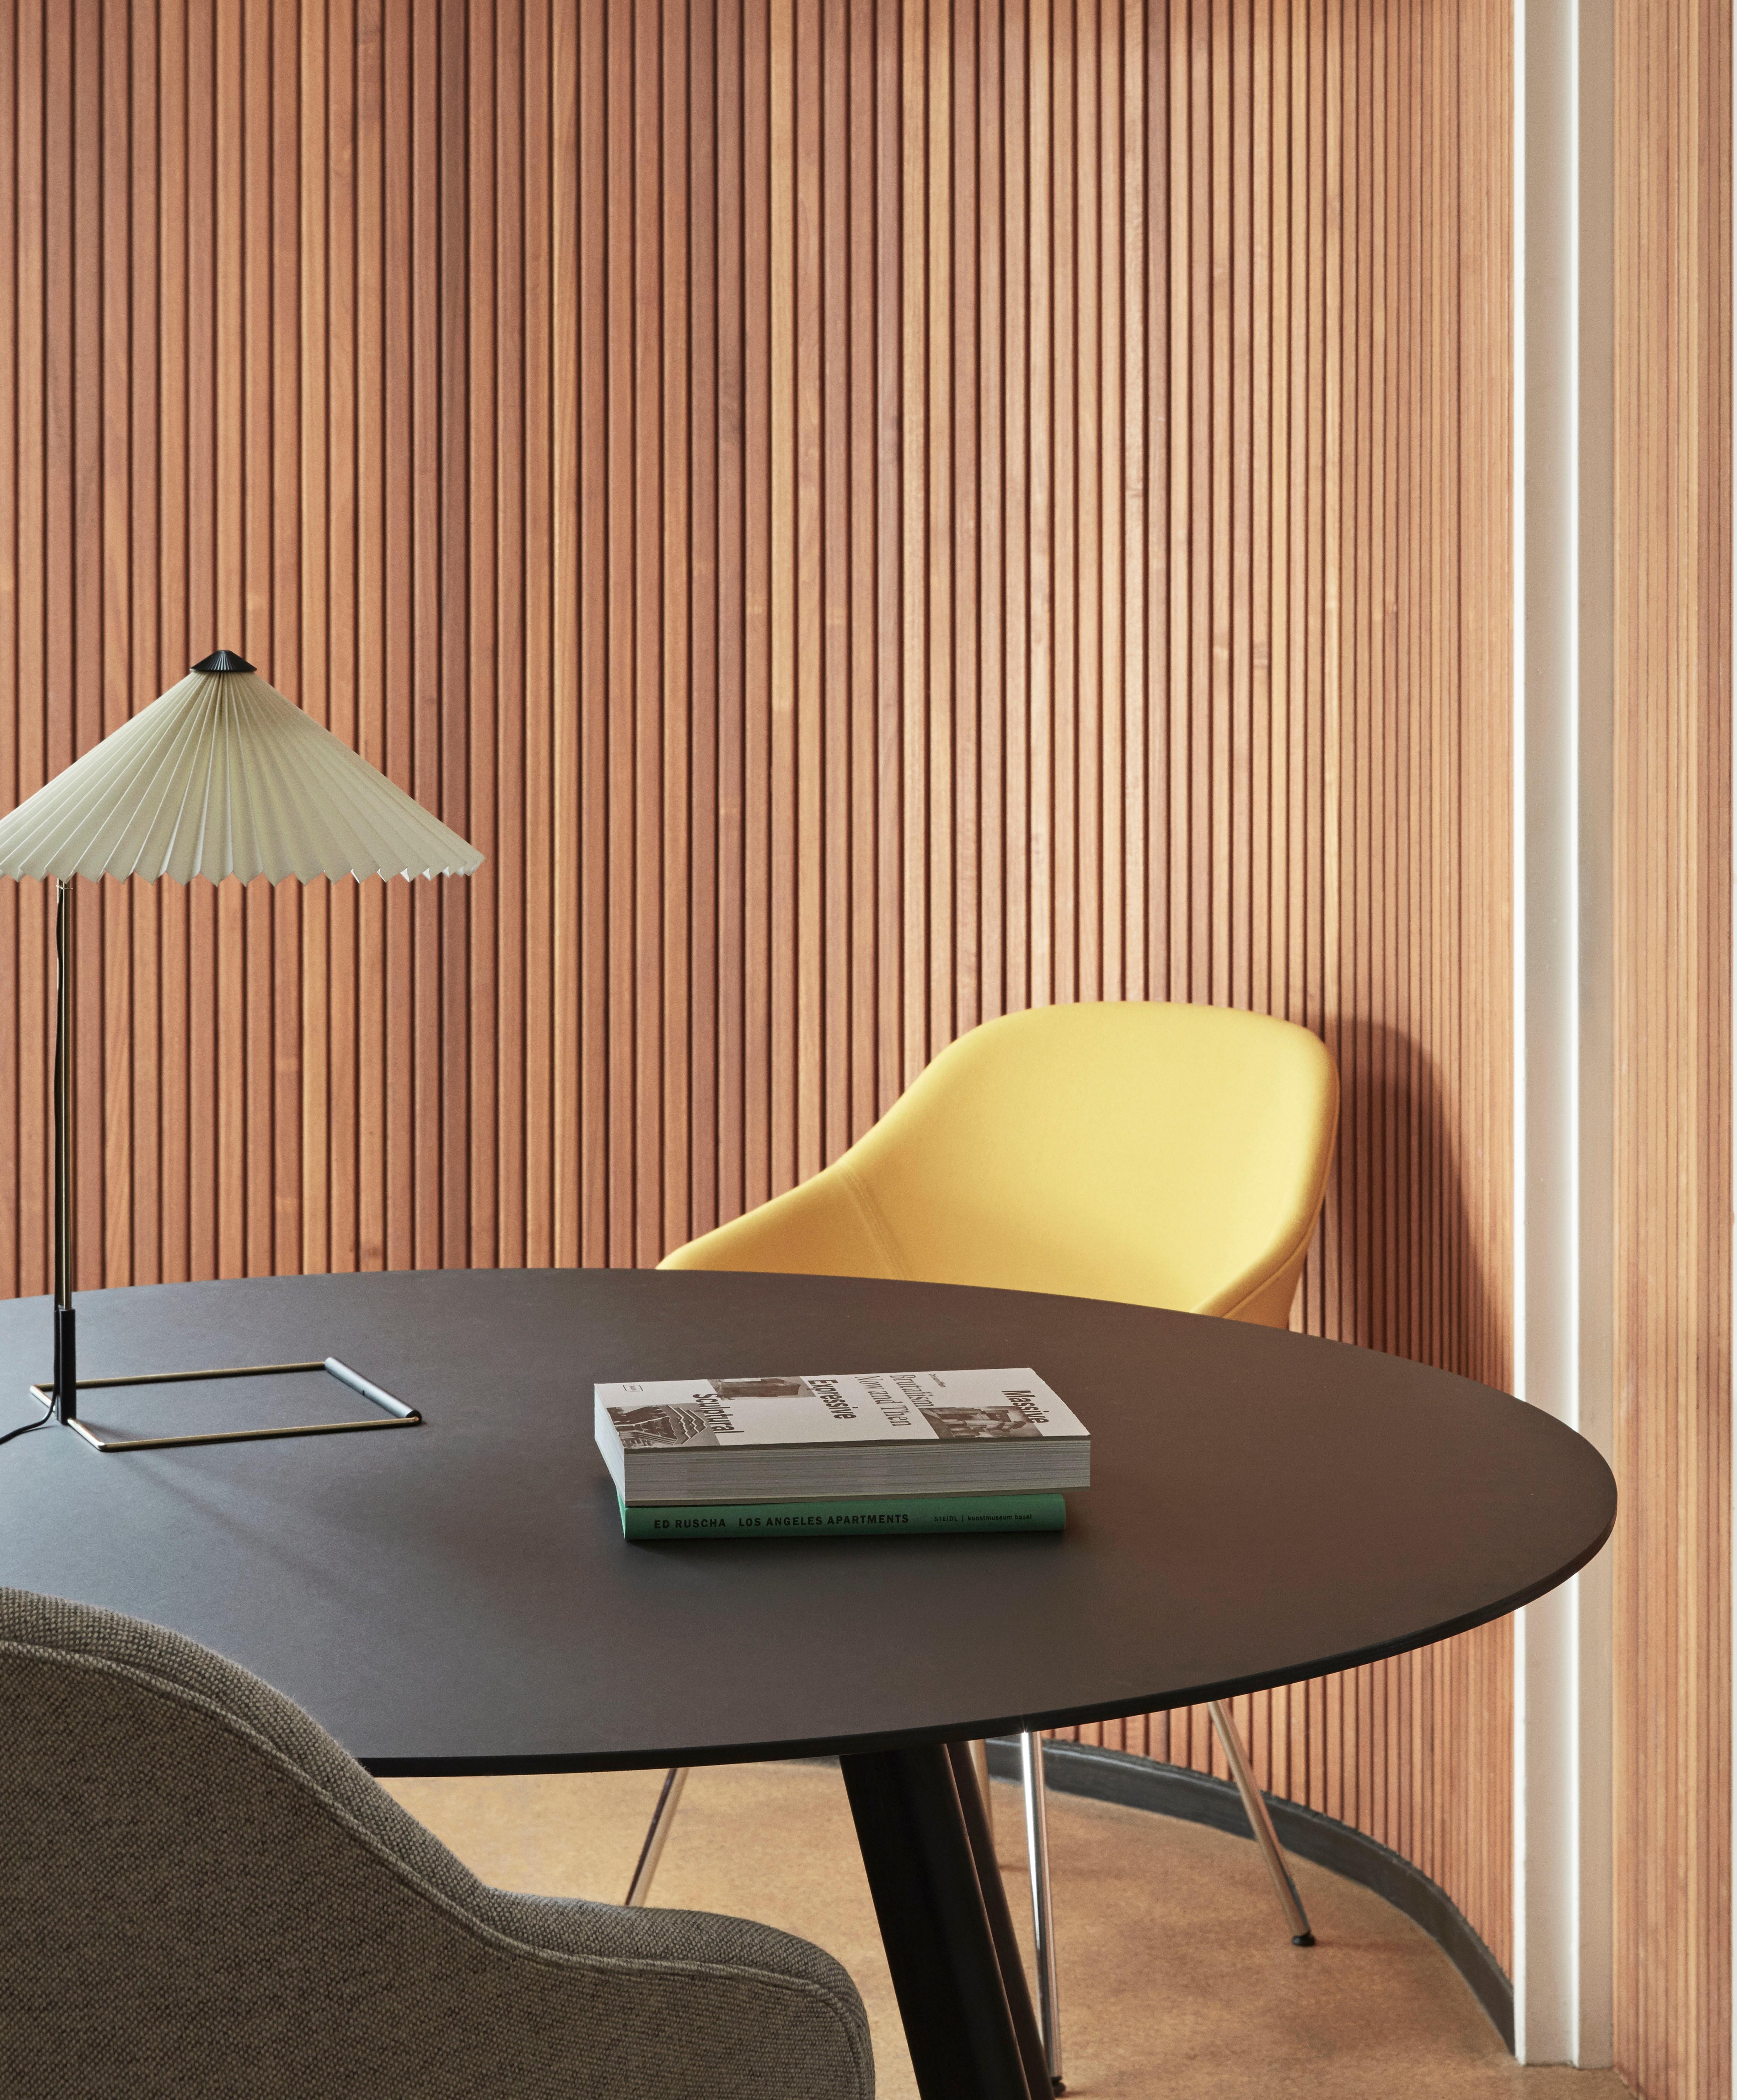 Die von Inga Sempé entworfene Tischleuchte Matin zeichnet sich durch ein modernes und zugleich poetisches Design aus. Ihre Konstruktion verbindet optische Feinheit mit physischer Robustheit. 

Sie besteht aus einem gebogenen Stahldrahtgestell in